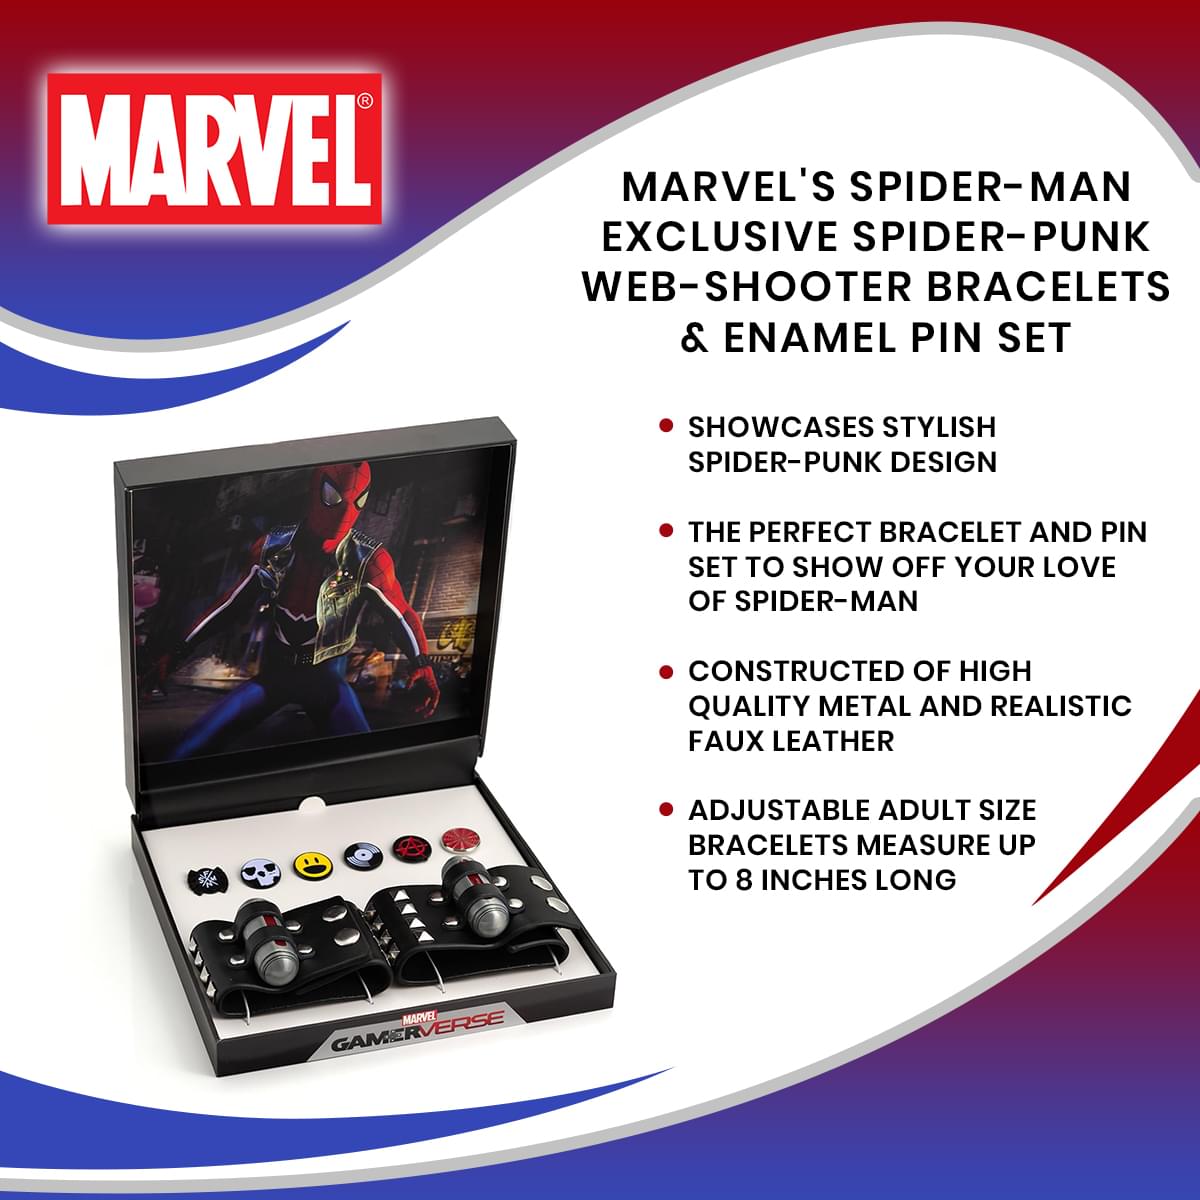 Marvel's Spider-Man Exclusive Spider-Punk Web-Shooter Bracelets & Enamel Pin Set